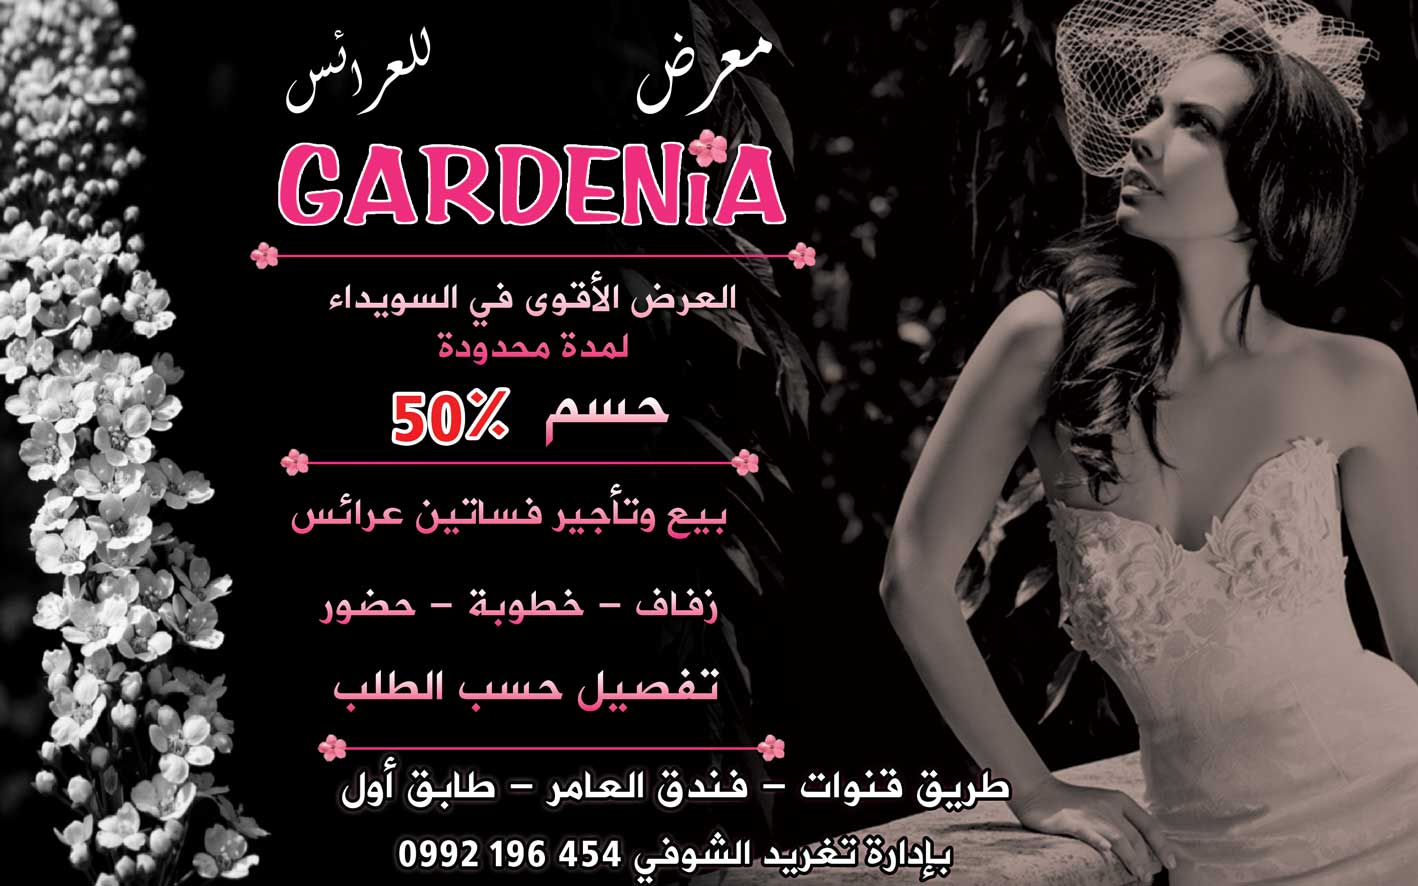 معرض GARDENIA للعرائس -  - جريدة هدهد الإعلانية